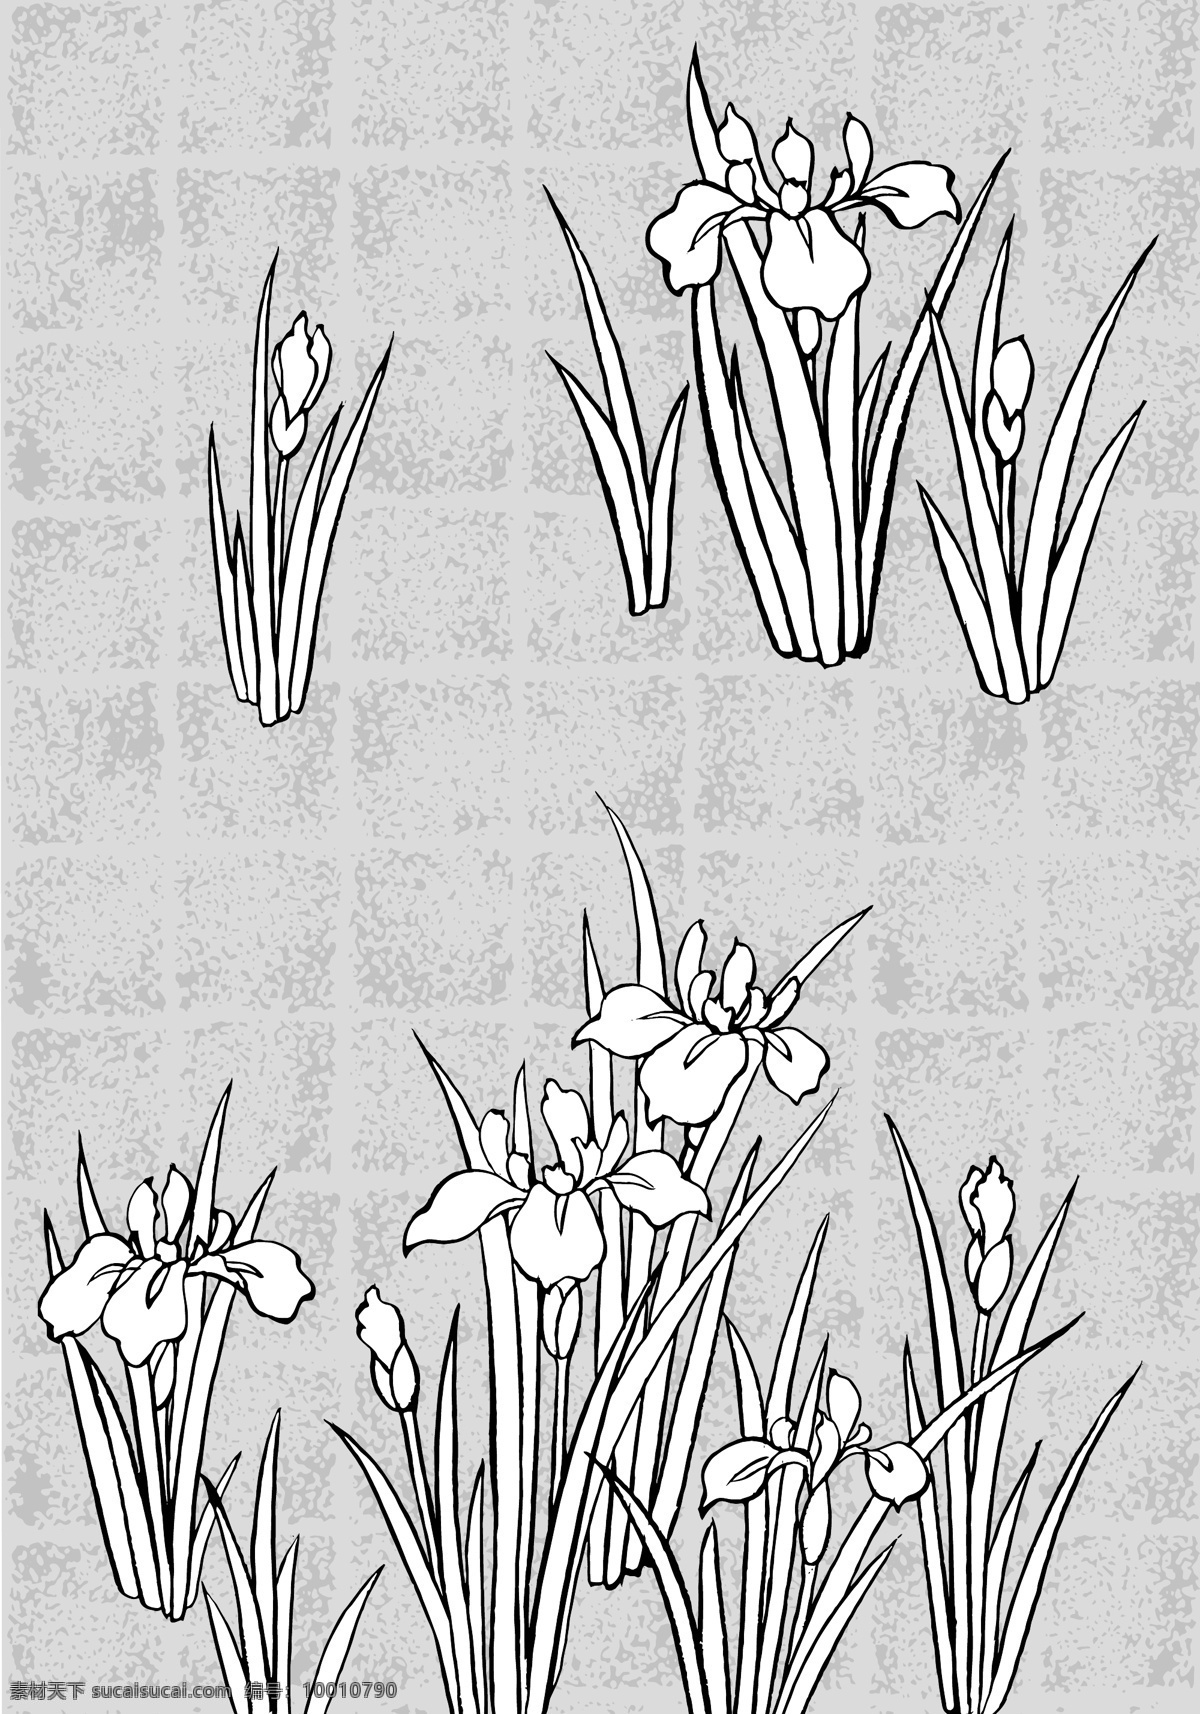 日本 线描 植物 花卉 矢量 系列 包括 蒲公英 松树 雪 南天 百合花 各种 背景 其他矢量 矢量素材 矢量图库